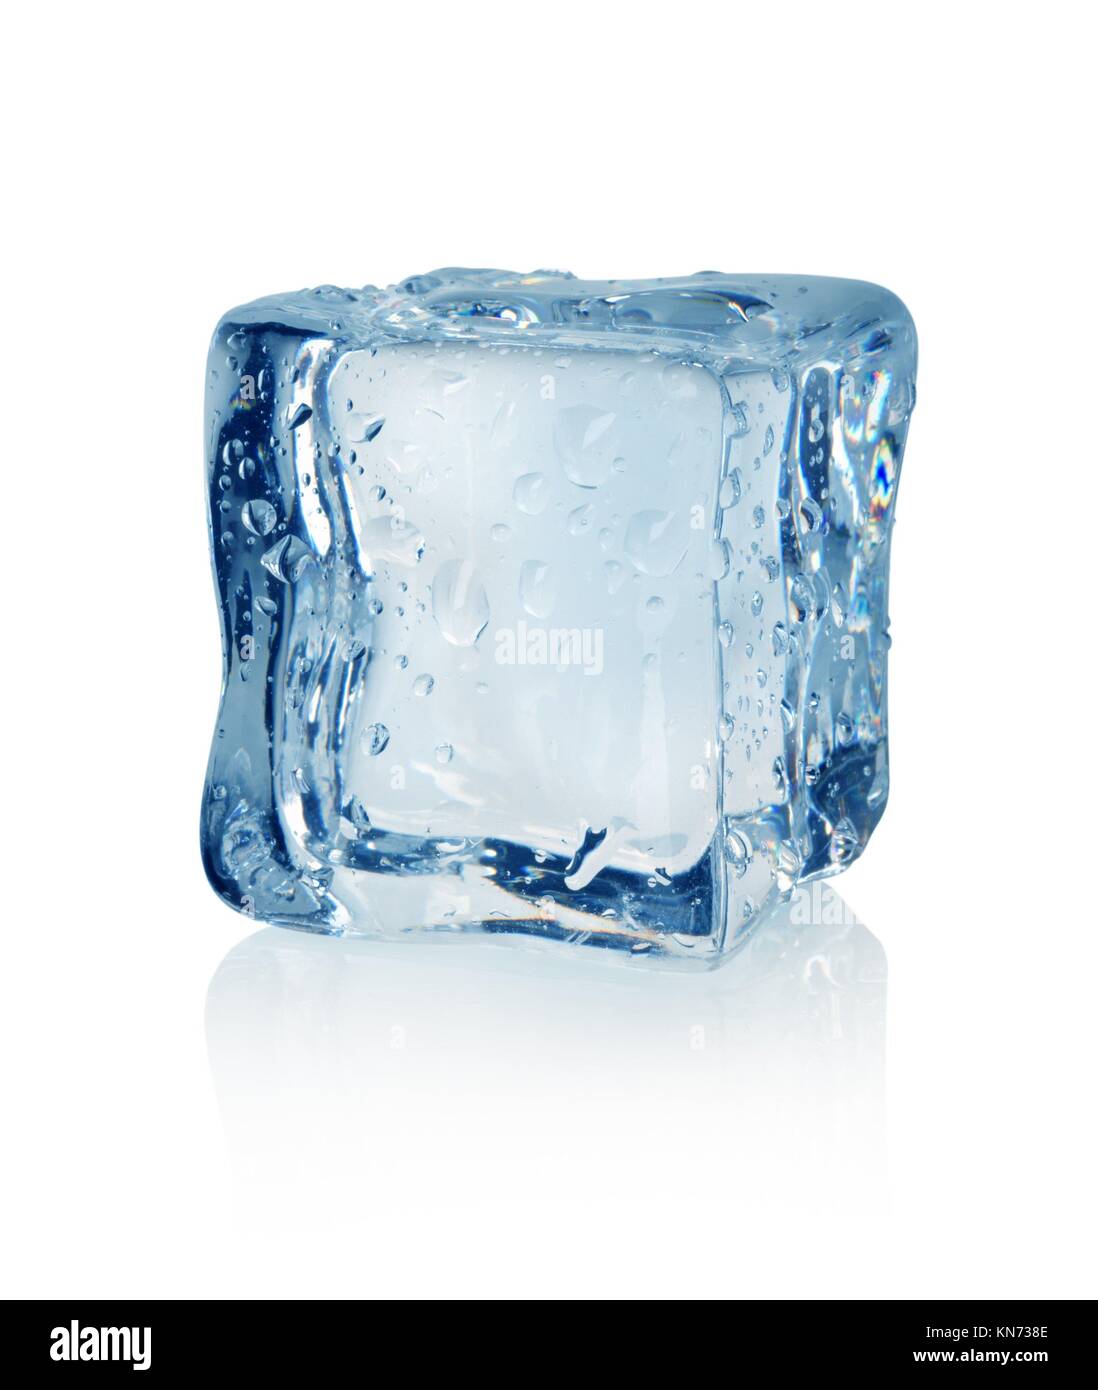 https://c8.alamy.com/compes/kn738e/ice-cube-aislado-sobre-un-fondo-blanco-kn738e.jpg